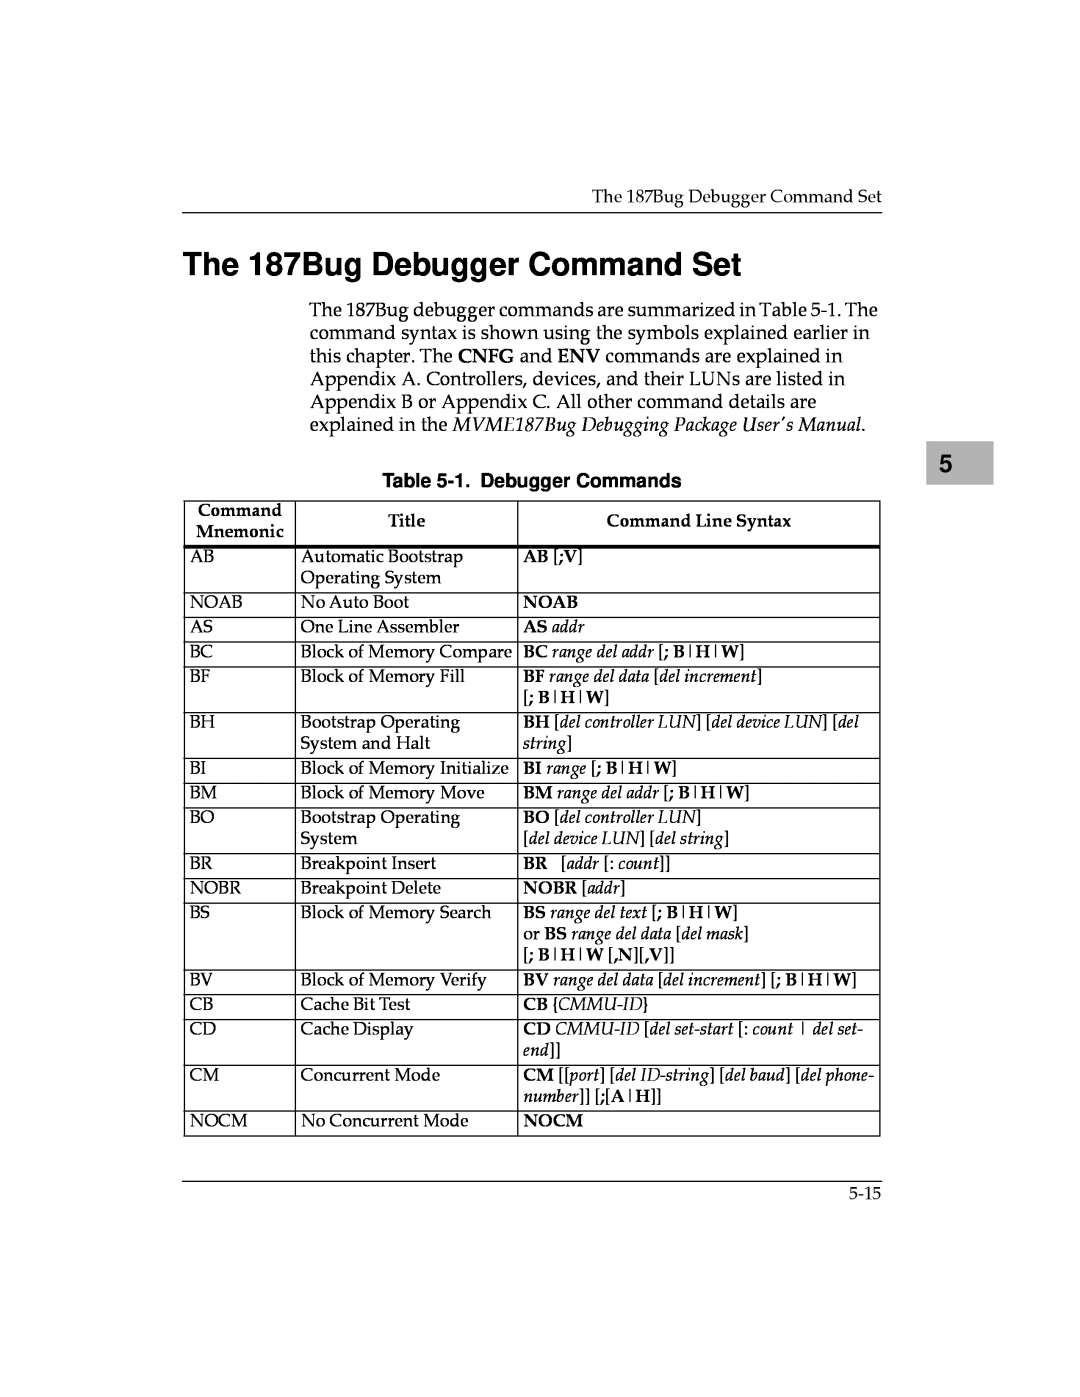 Motorola MVME187 manual The 187Bug Debugger Command Set, 1. Debugger Commands, AS addr, BC range del addr B H W, string 